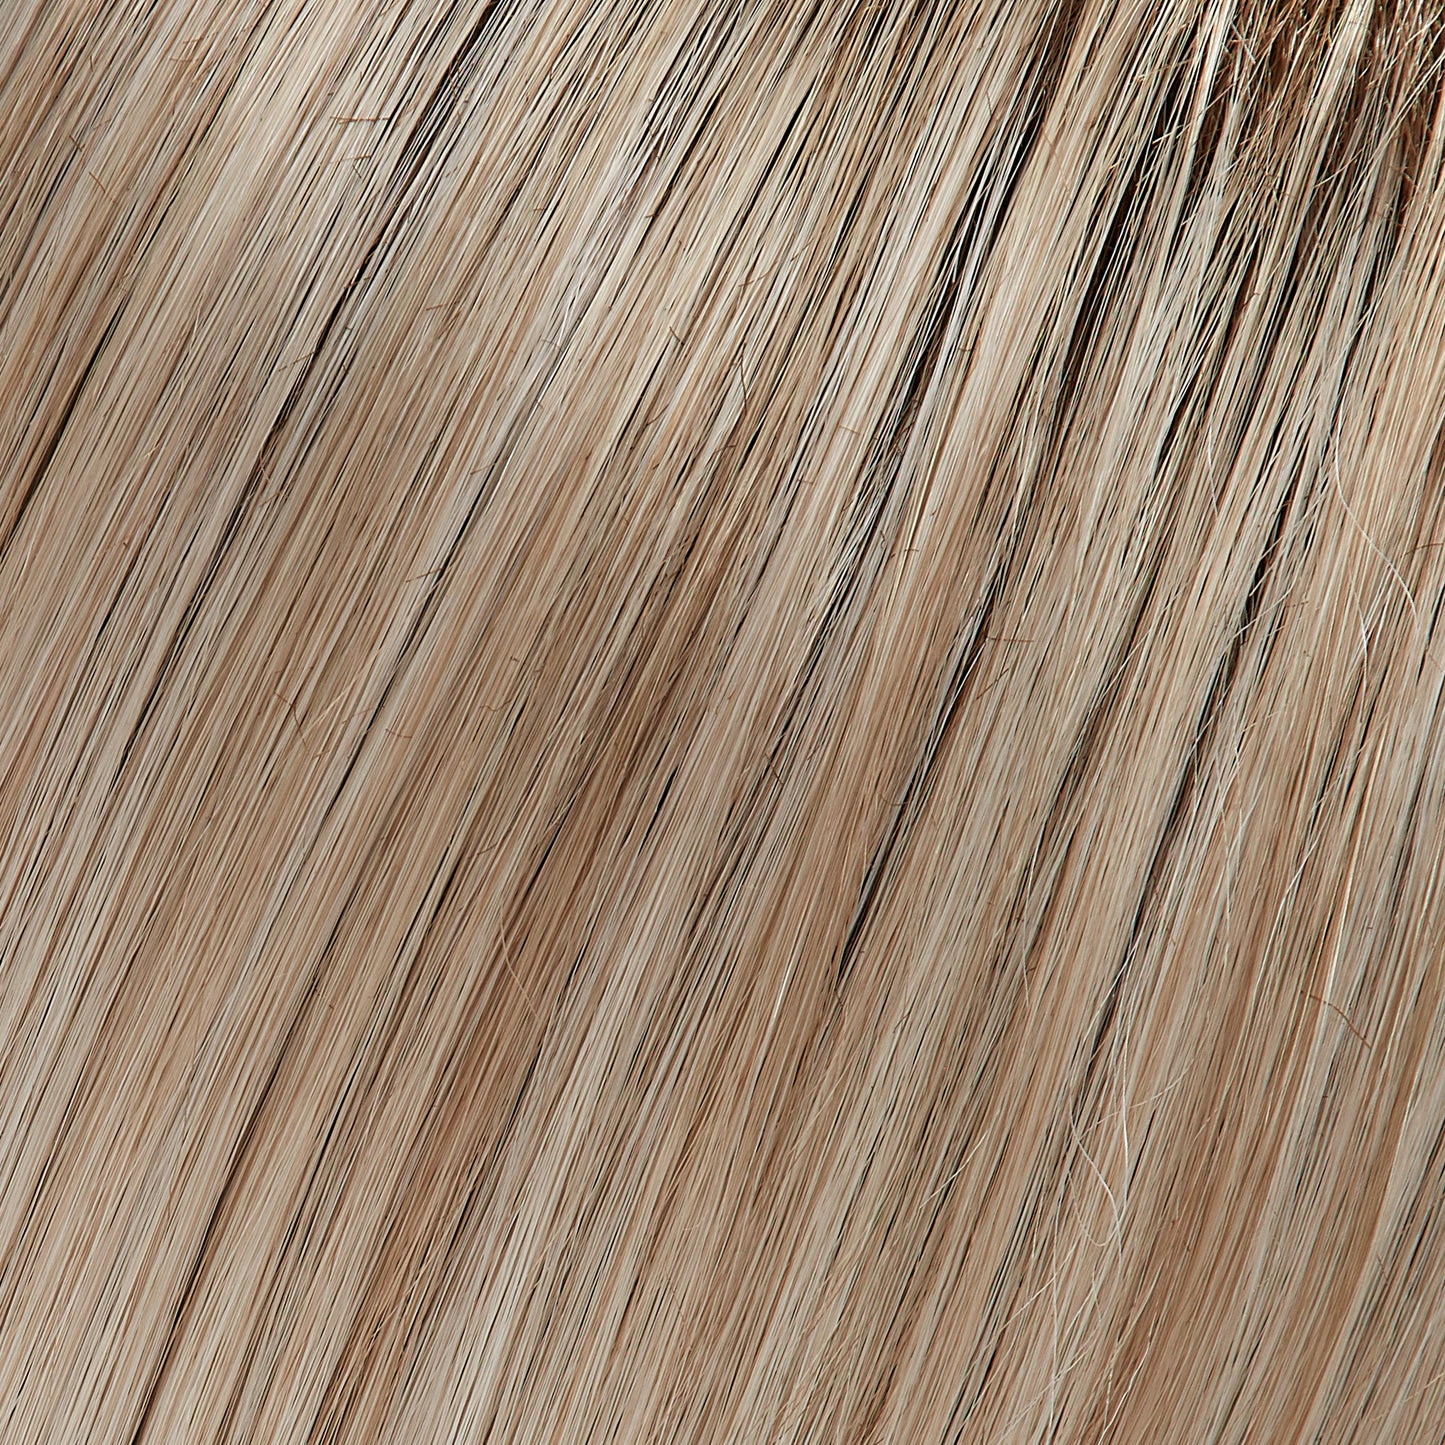 Top Blend - Human Hair Topper Collection 2023 Jon Renau